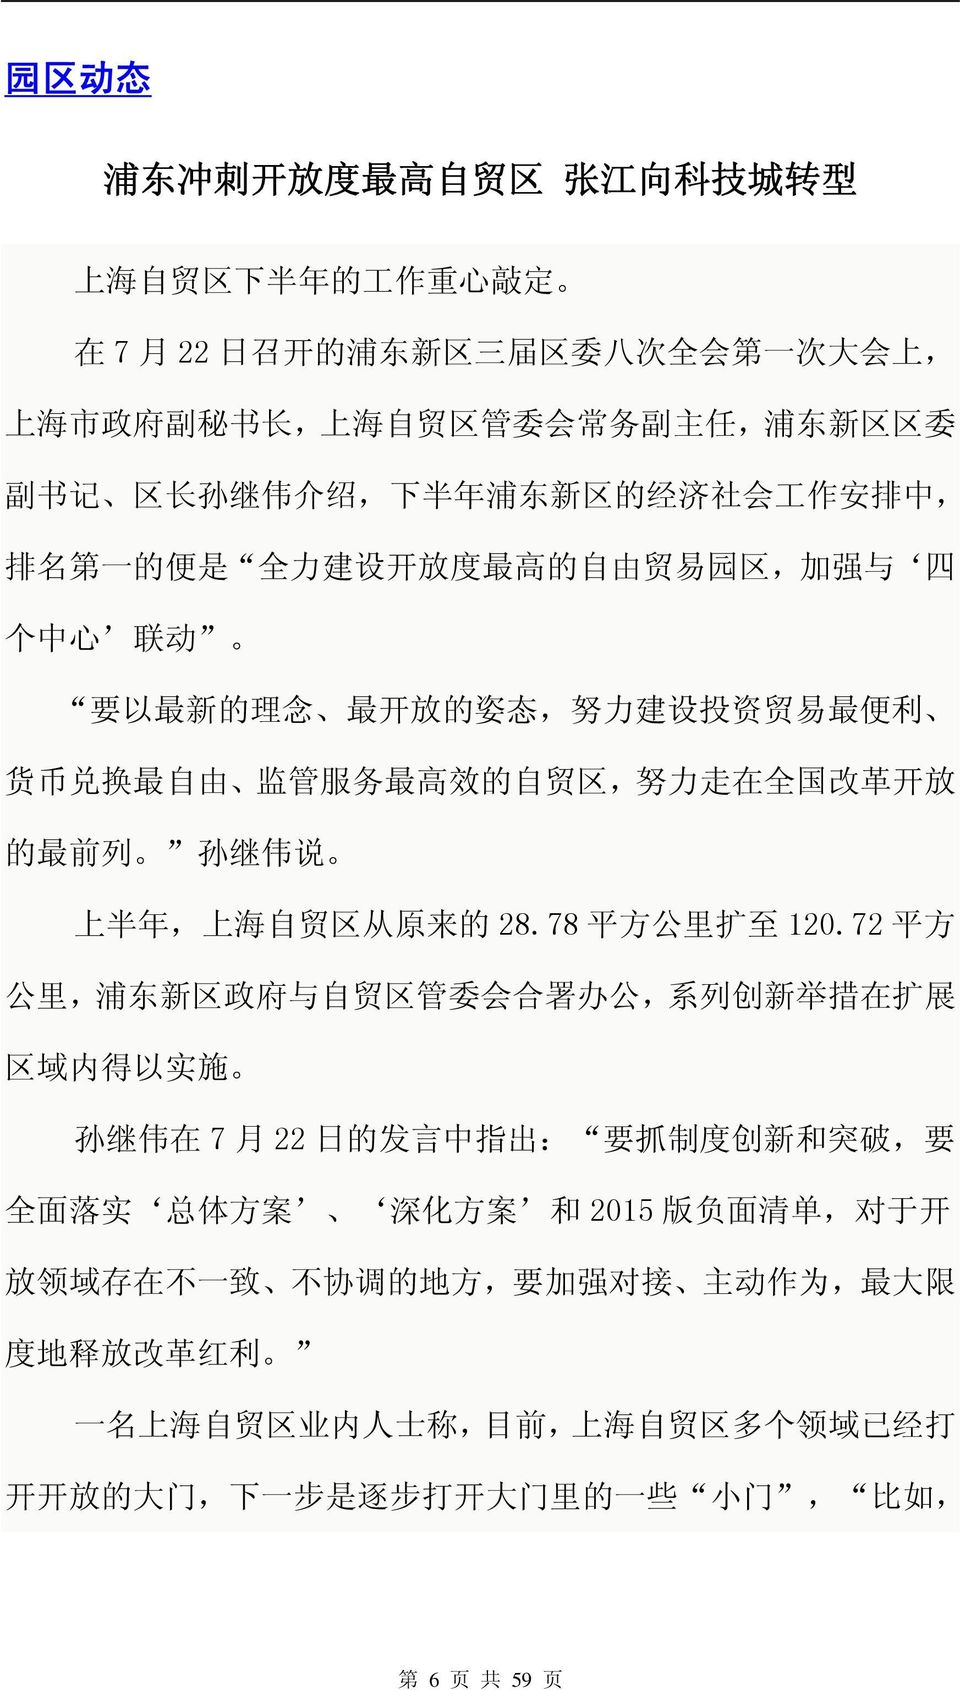 力 走 在 全 国 改 革 开 放 的 最 前 列 孙 继 伟 说 上 半 年, 上 海 自 贸 区 从 原 来 的 28.78 平 方 公 里 扩 至 120.